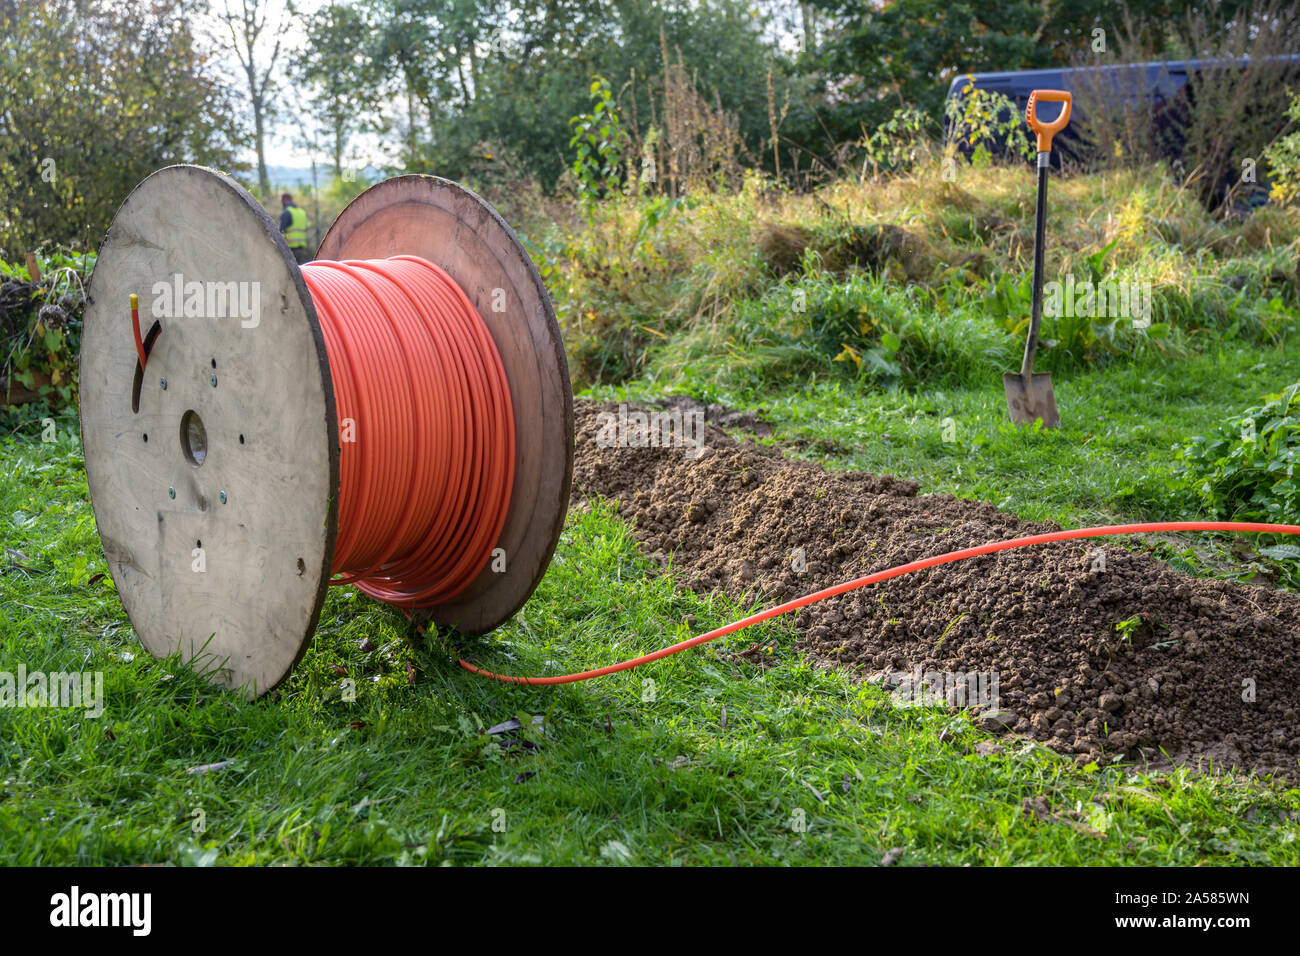 Holz- Schieber mit LWL-Kabel für das schnelle Internet bereit in engen  Gräben im Boden auf einer Wiese verlegt werden, der Ausbau der  Infrastruktur in der c Stockfotografie - Alamy